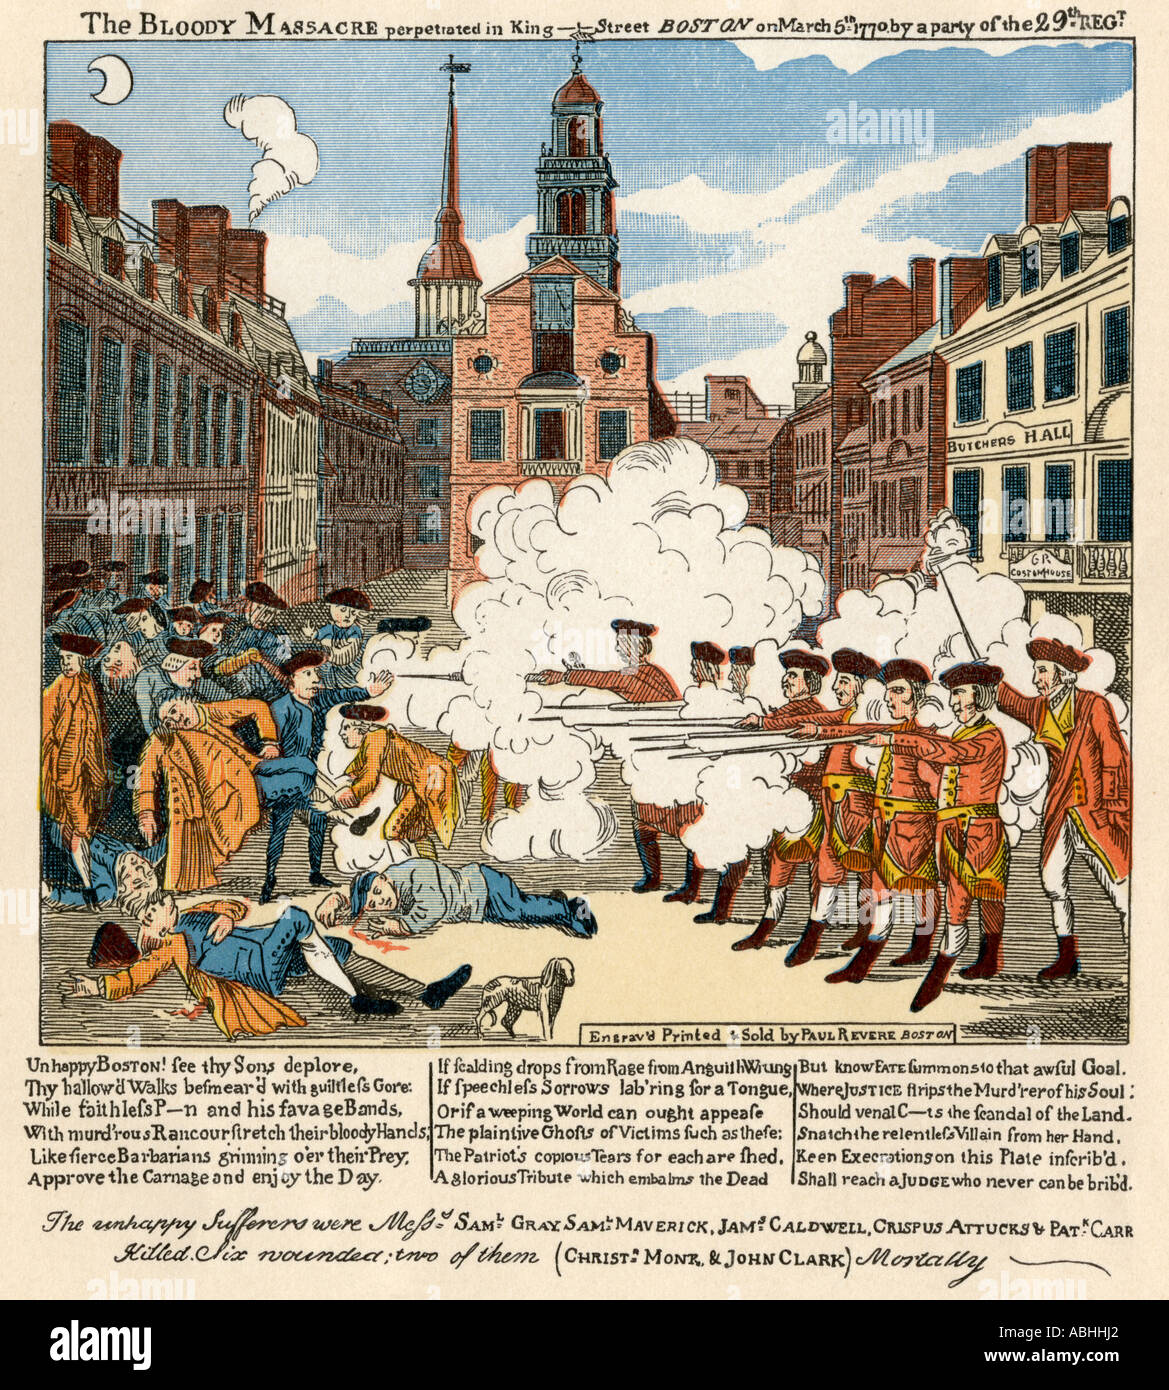 Paul Revere grabado de la Matanza de Boston 1770 un evento que conduce a la guerra revolucionaria. Grabado en color Foto de stock